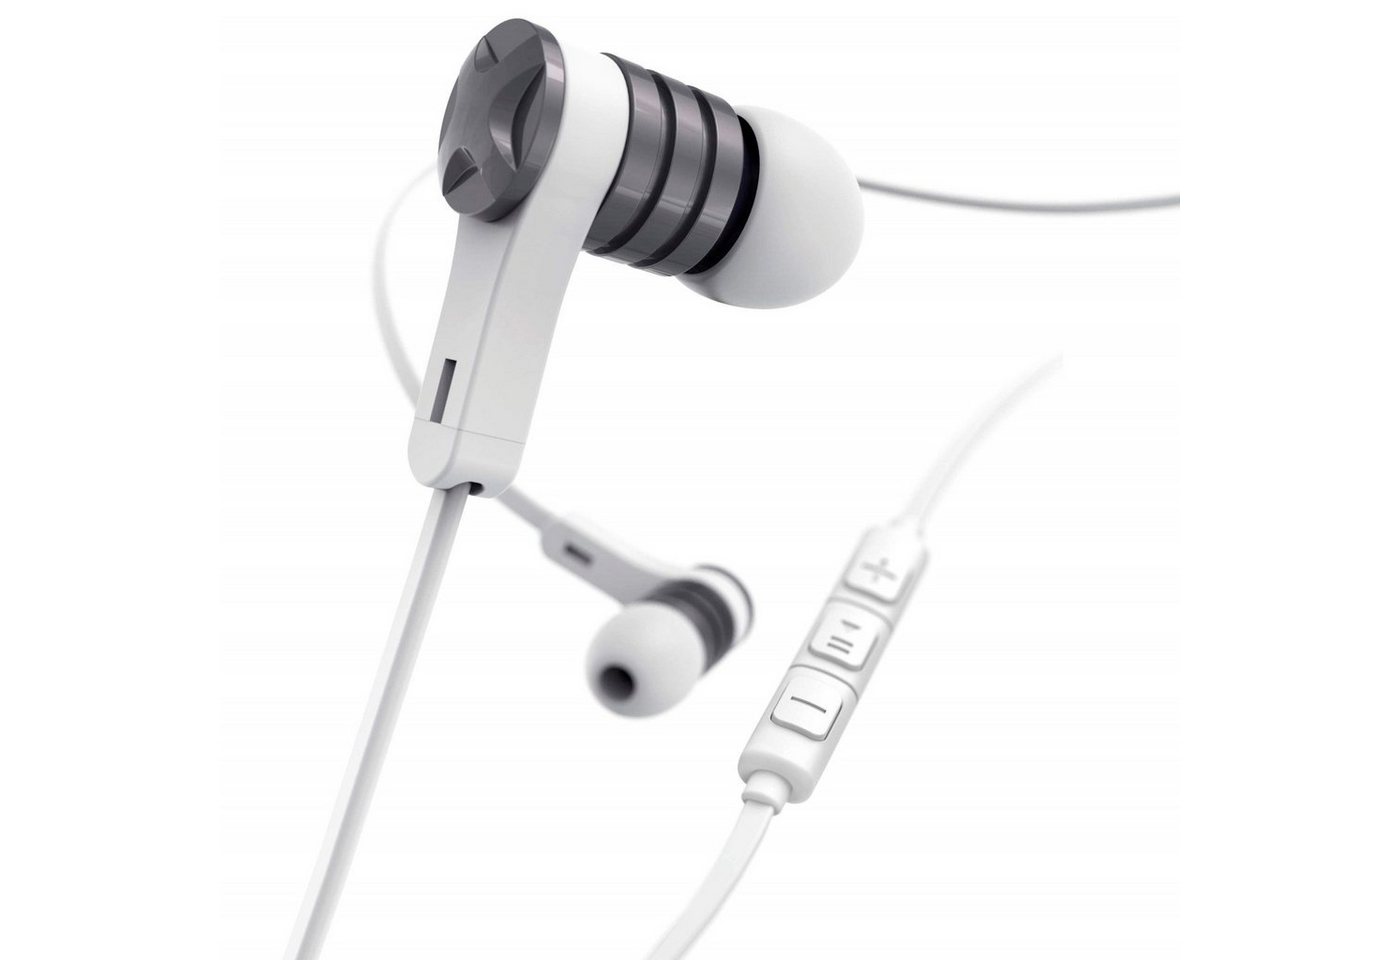 Hama Intense In-Ear Headset 3,5mm Klinke Ohrhörer Smartphone-Headset (Anruffunktion, Mikrofon, Wiedergabe-Steuerung, Lautstärkenreglung, 3,5mm, Mikrofon, Fernbedienung, Silikon-Ohrpolster, 3,5mm Klinken-Stecker) von Hama